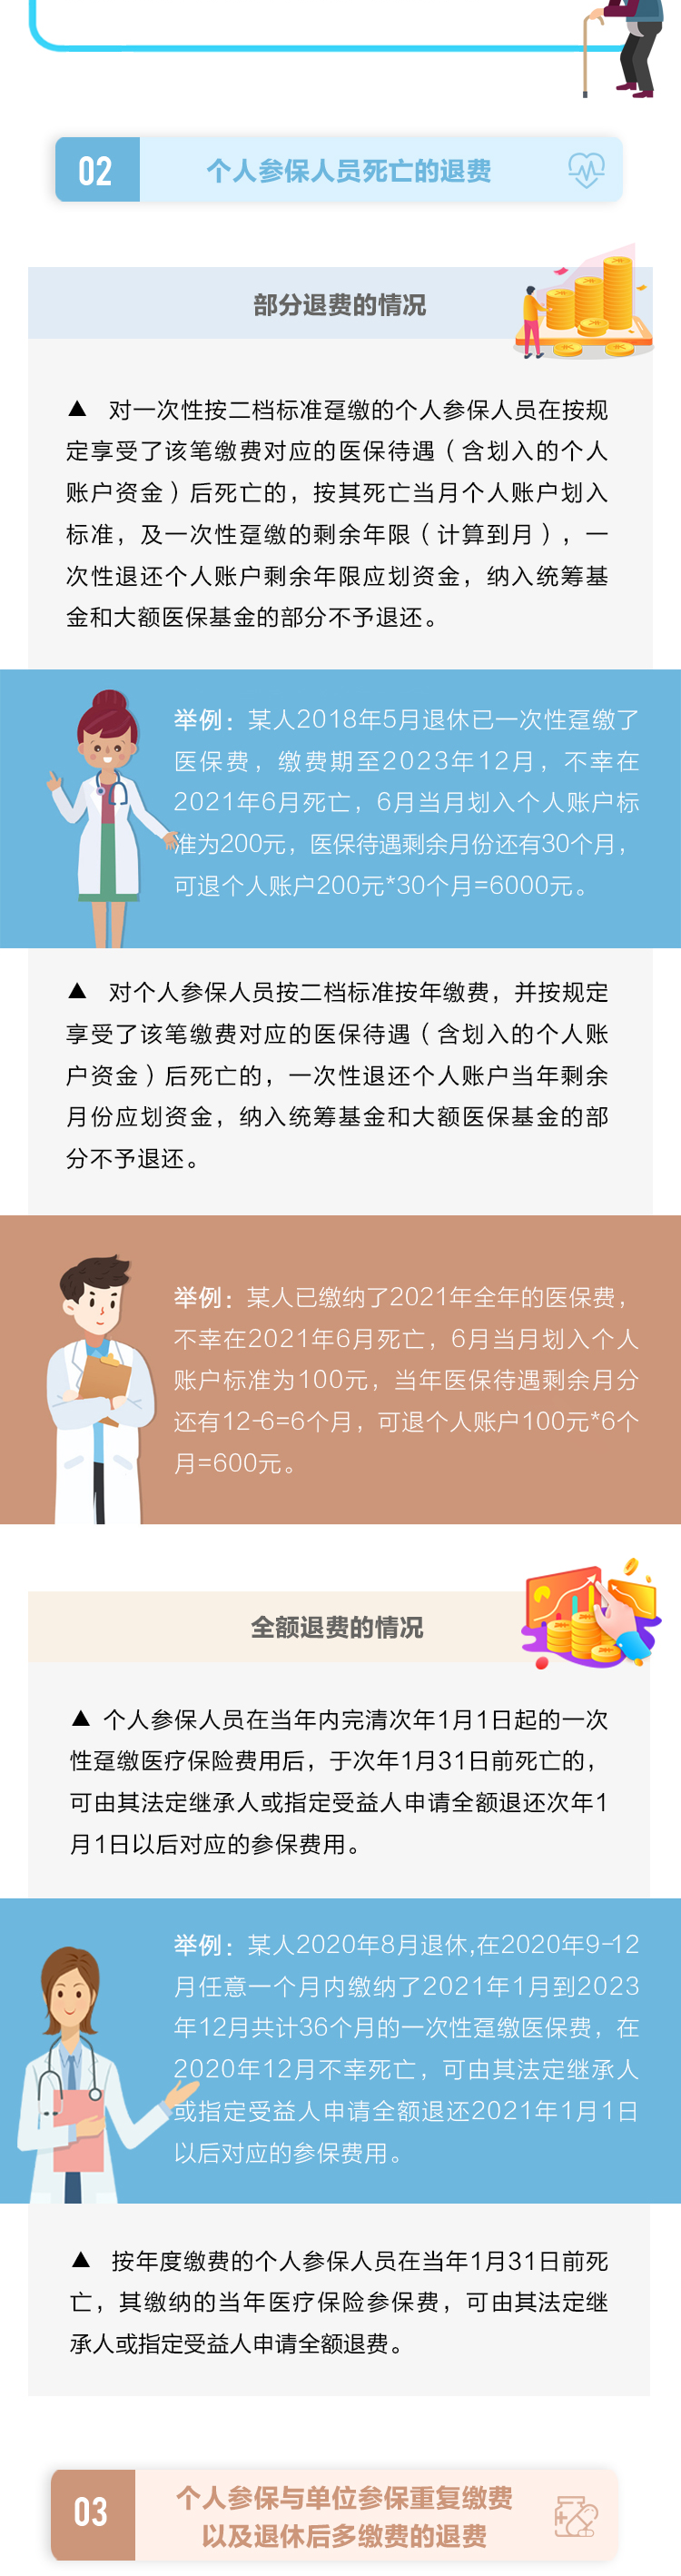 一图读懂 | 重庆市医疗保险退费政策